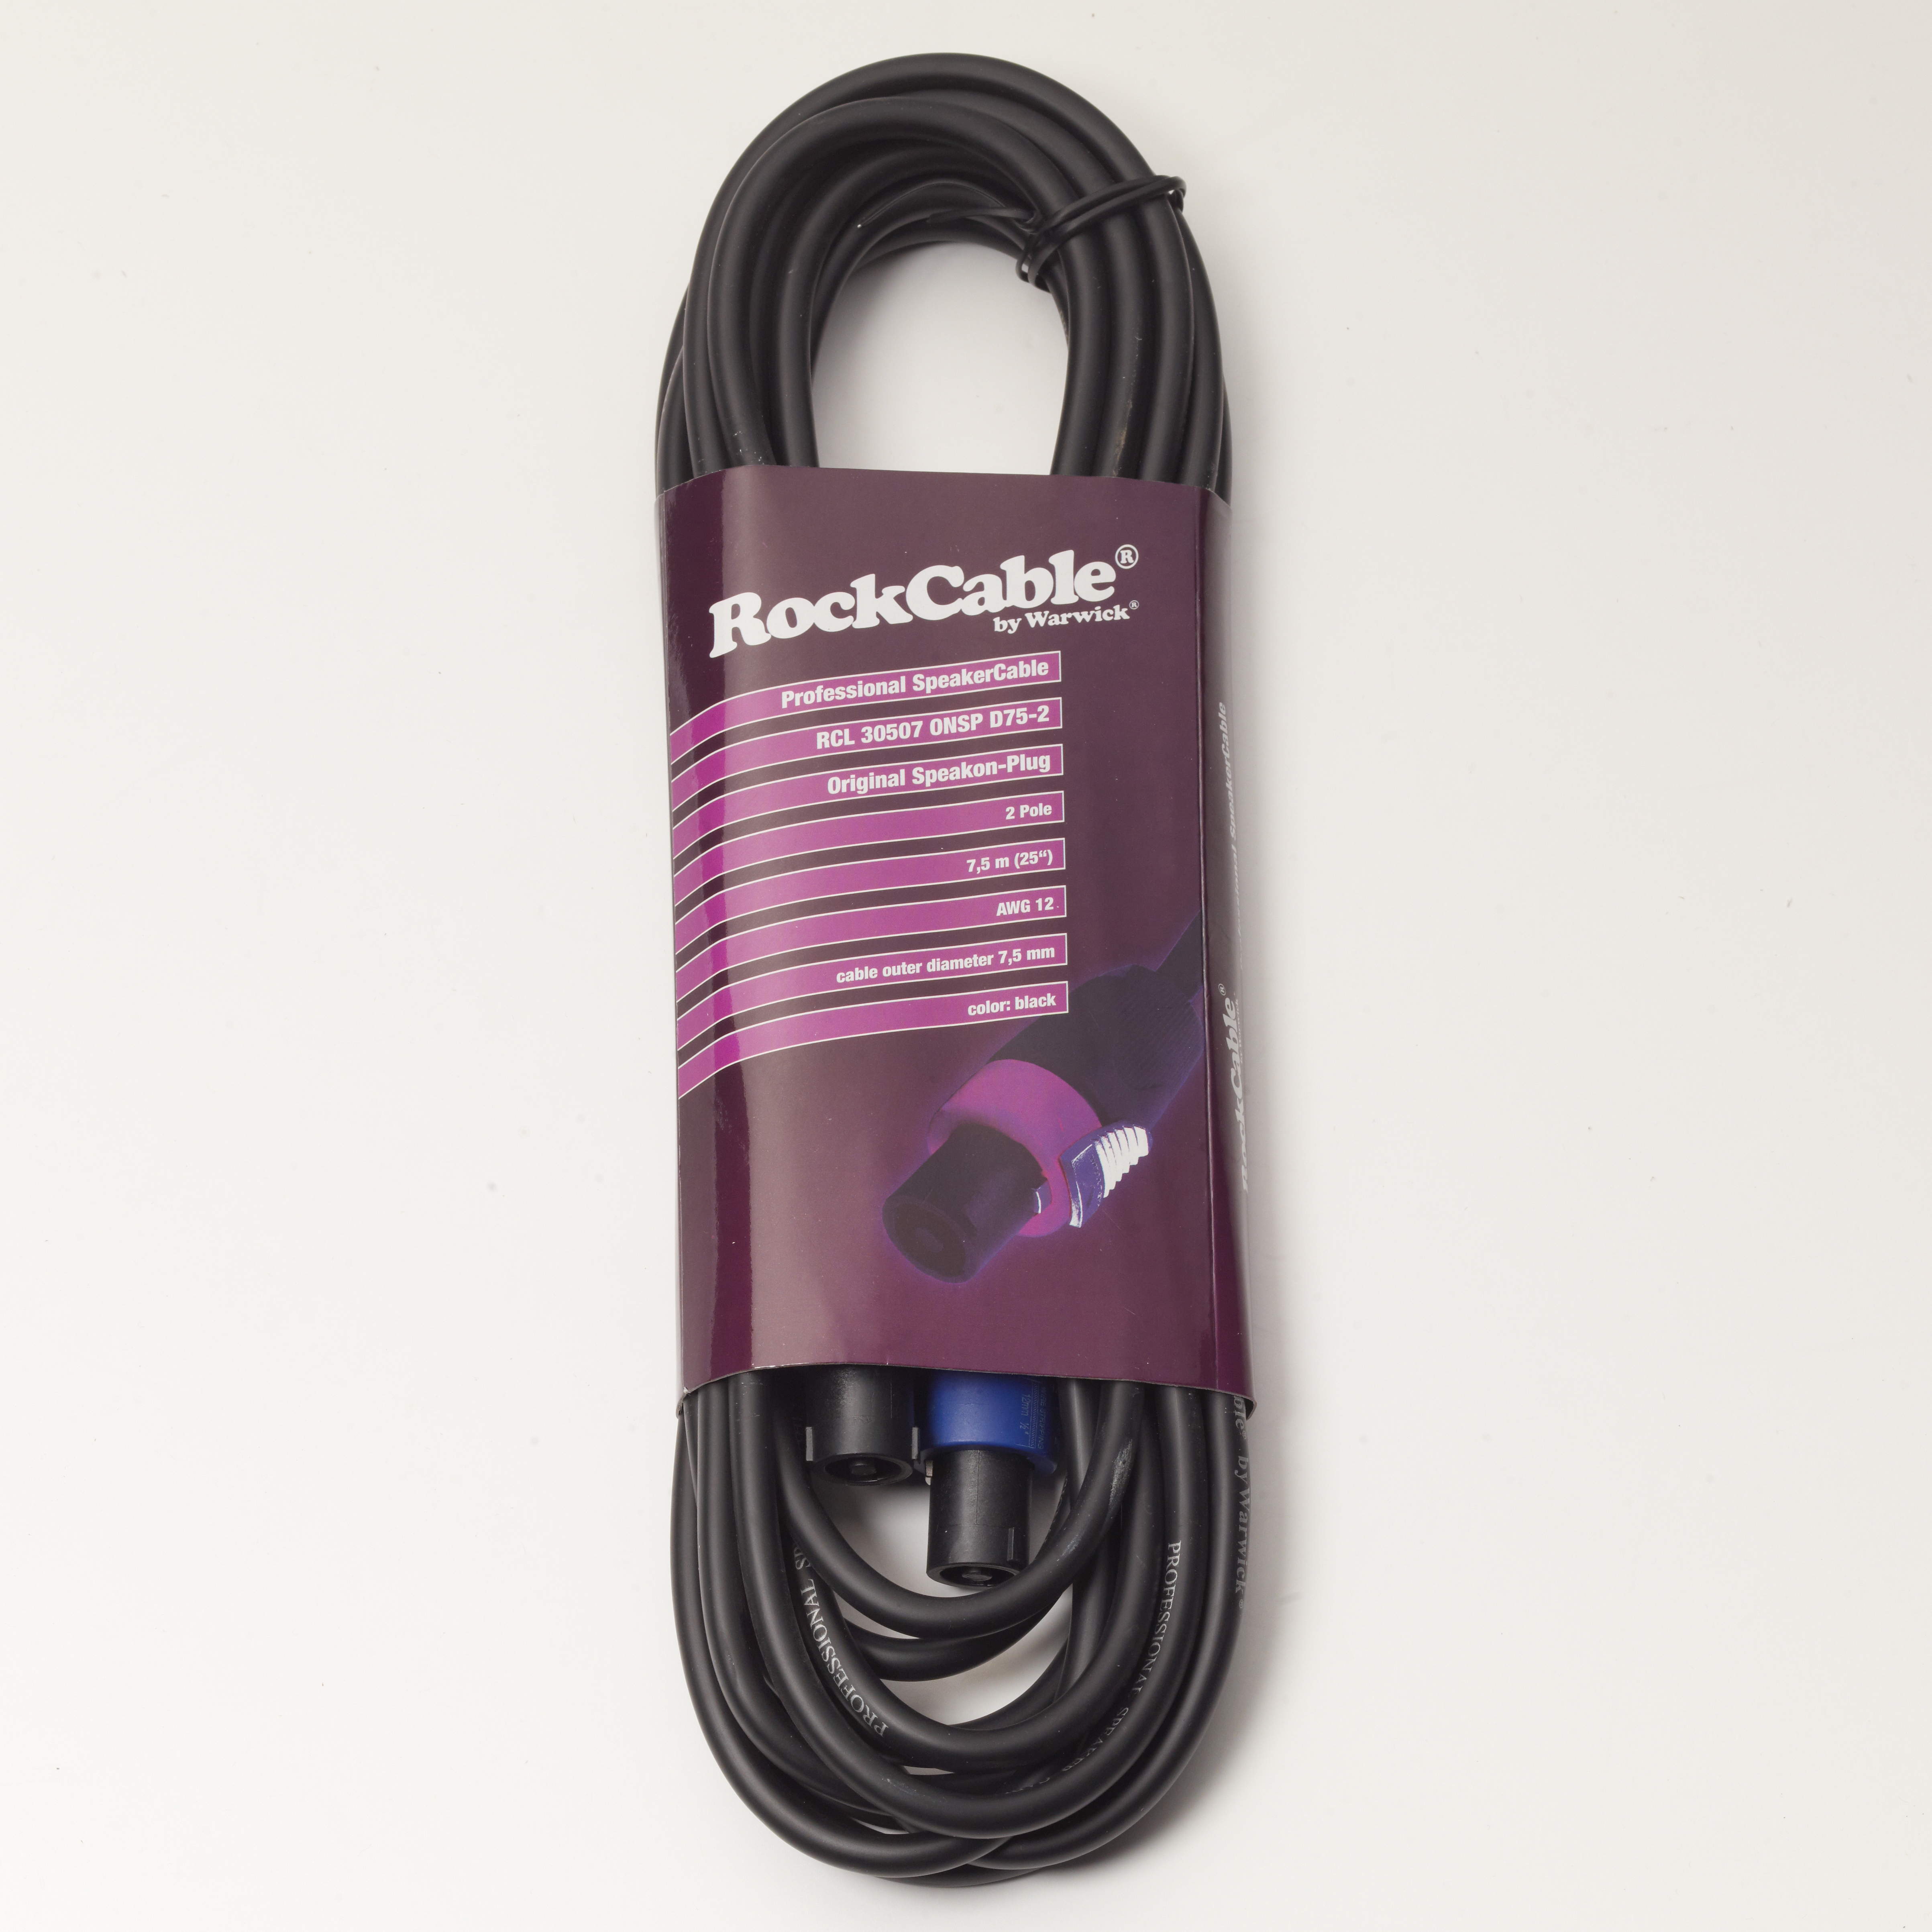 RockCable Speaker Cable - Speakon Plug (2-pole) - 7.5 m / 24.6 ft